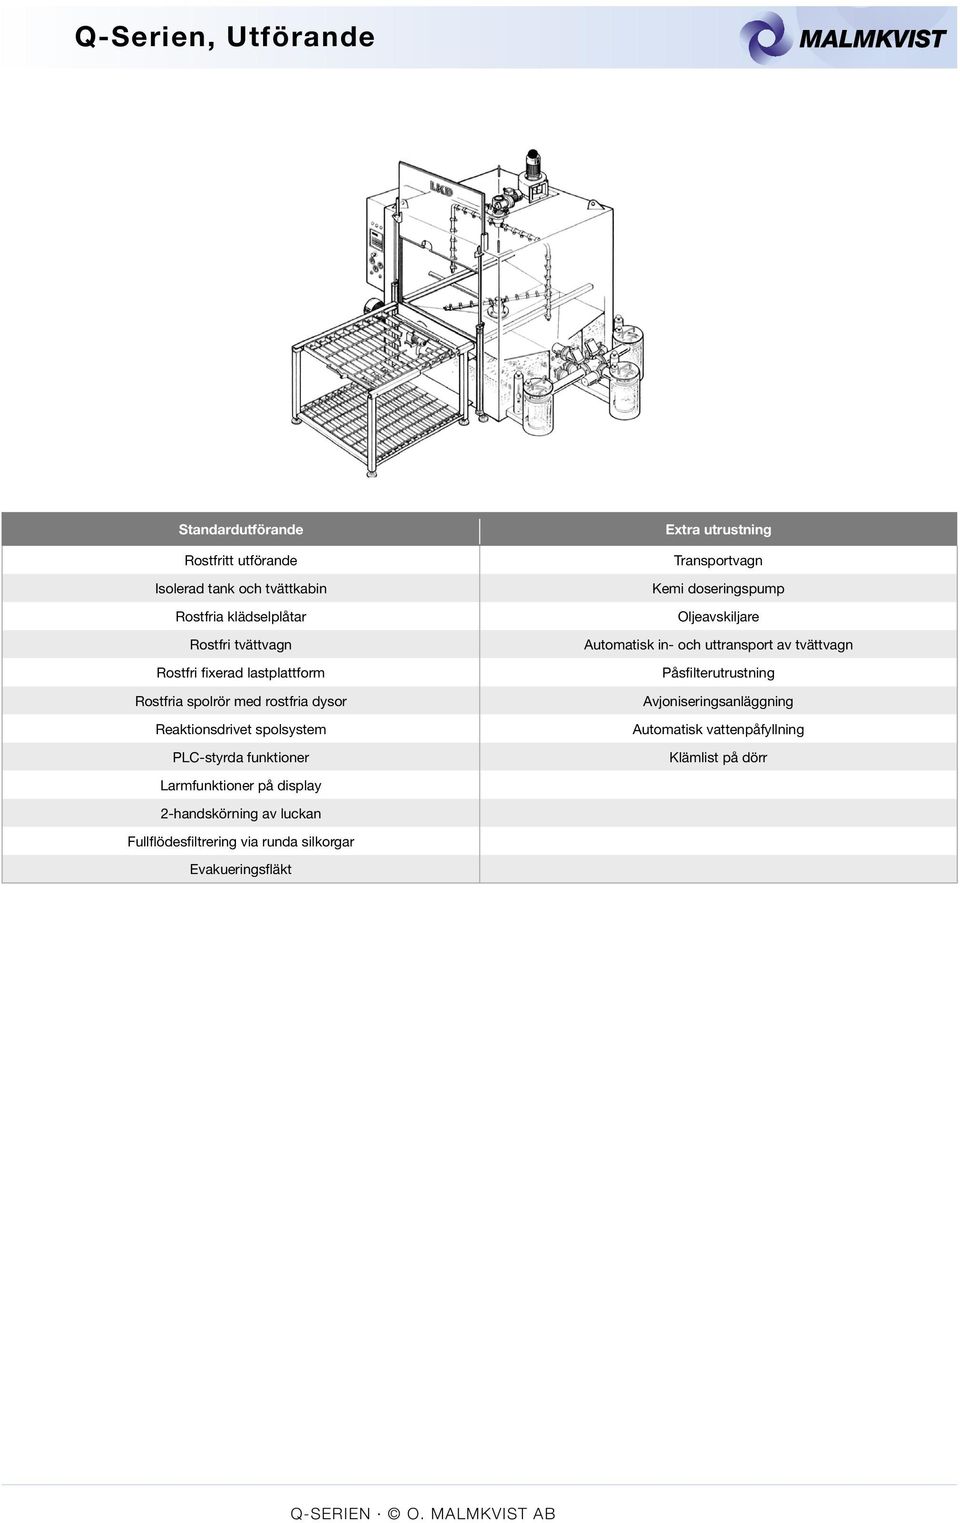 Kemi doseringspump Oljeavskiljare Automatisk in- och uttransport av tvättvagn Påsfilterutrustning Avjoniseringsanläggning Automatisk